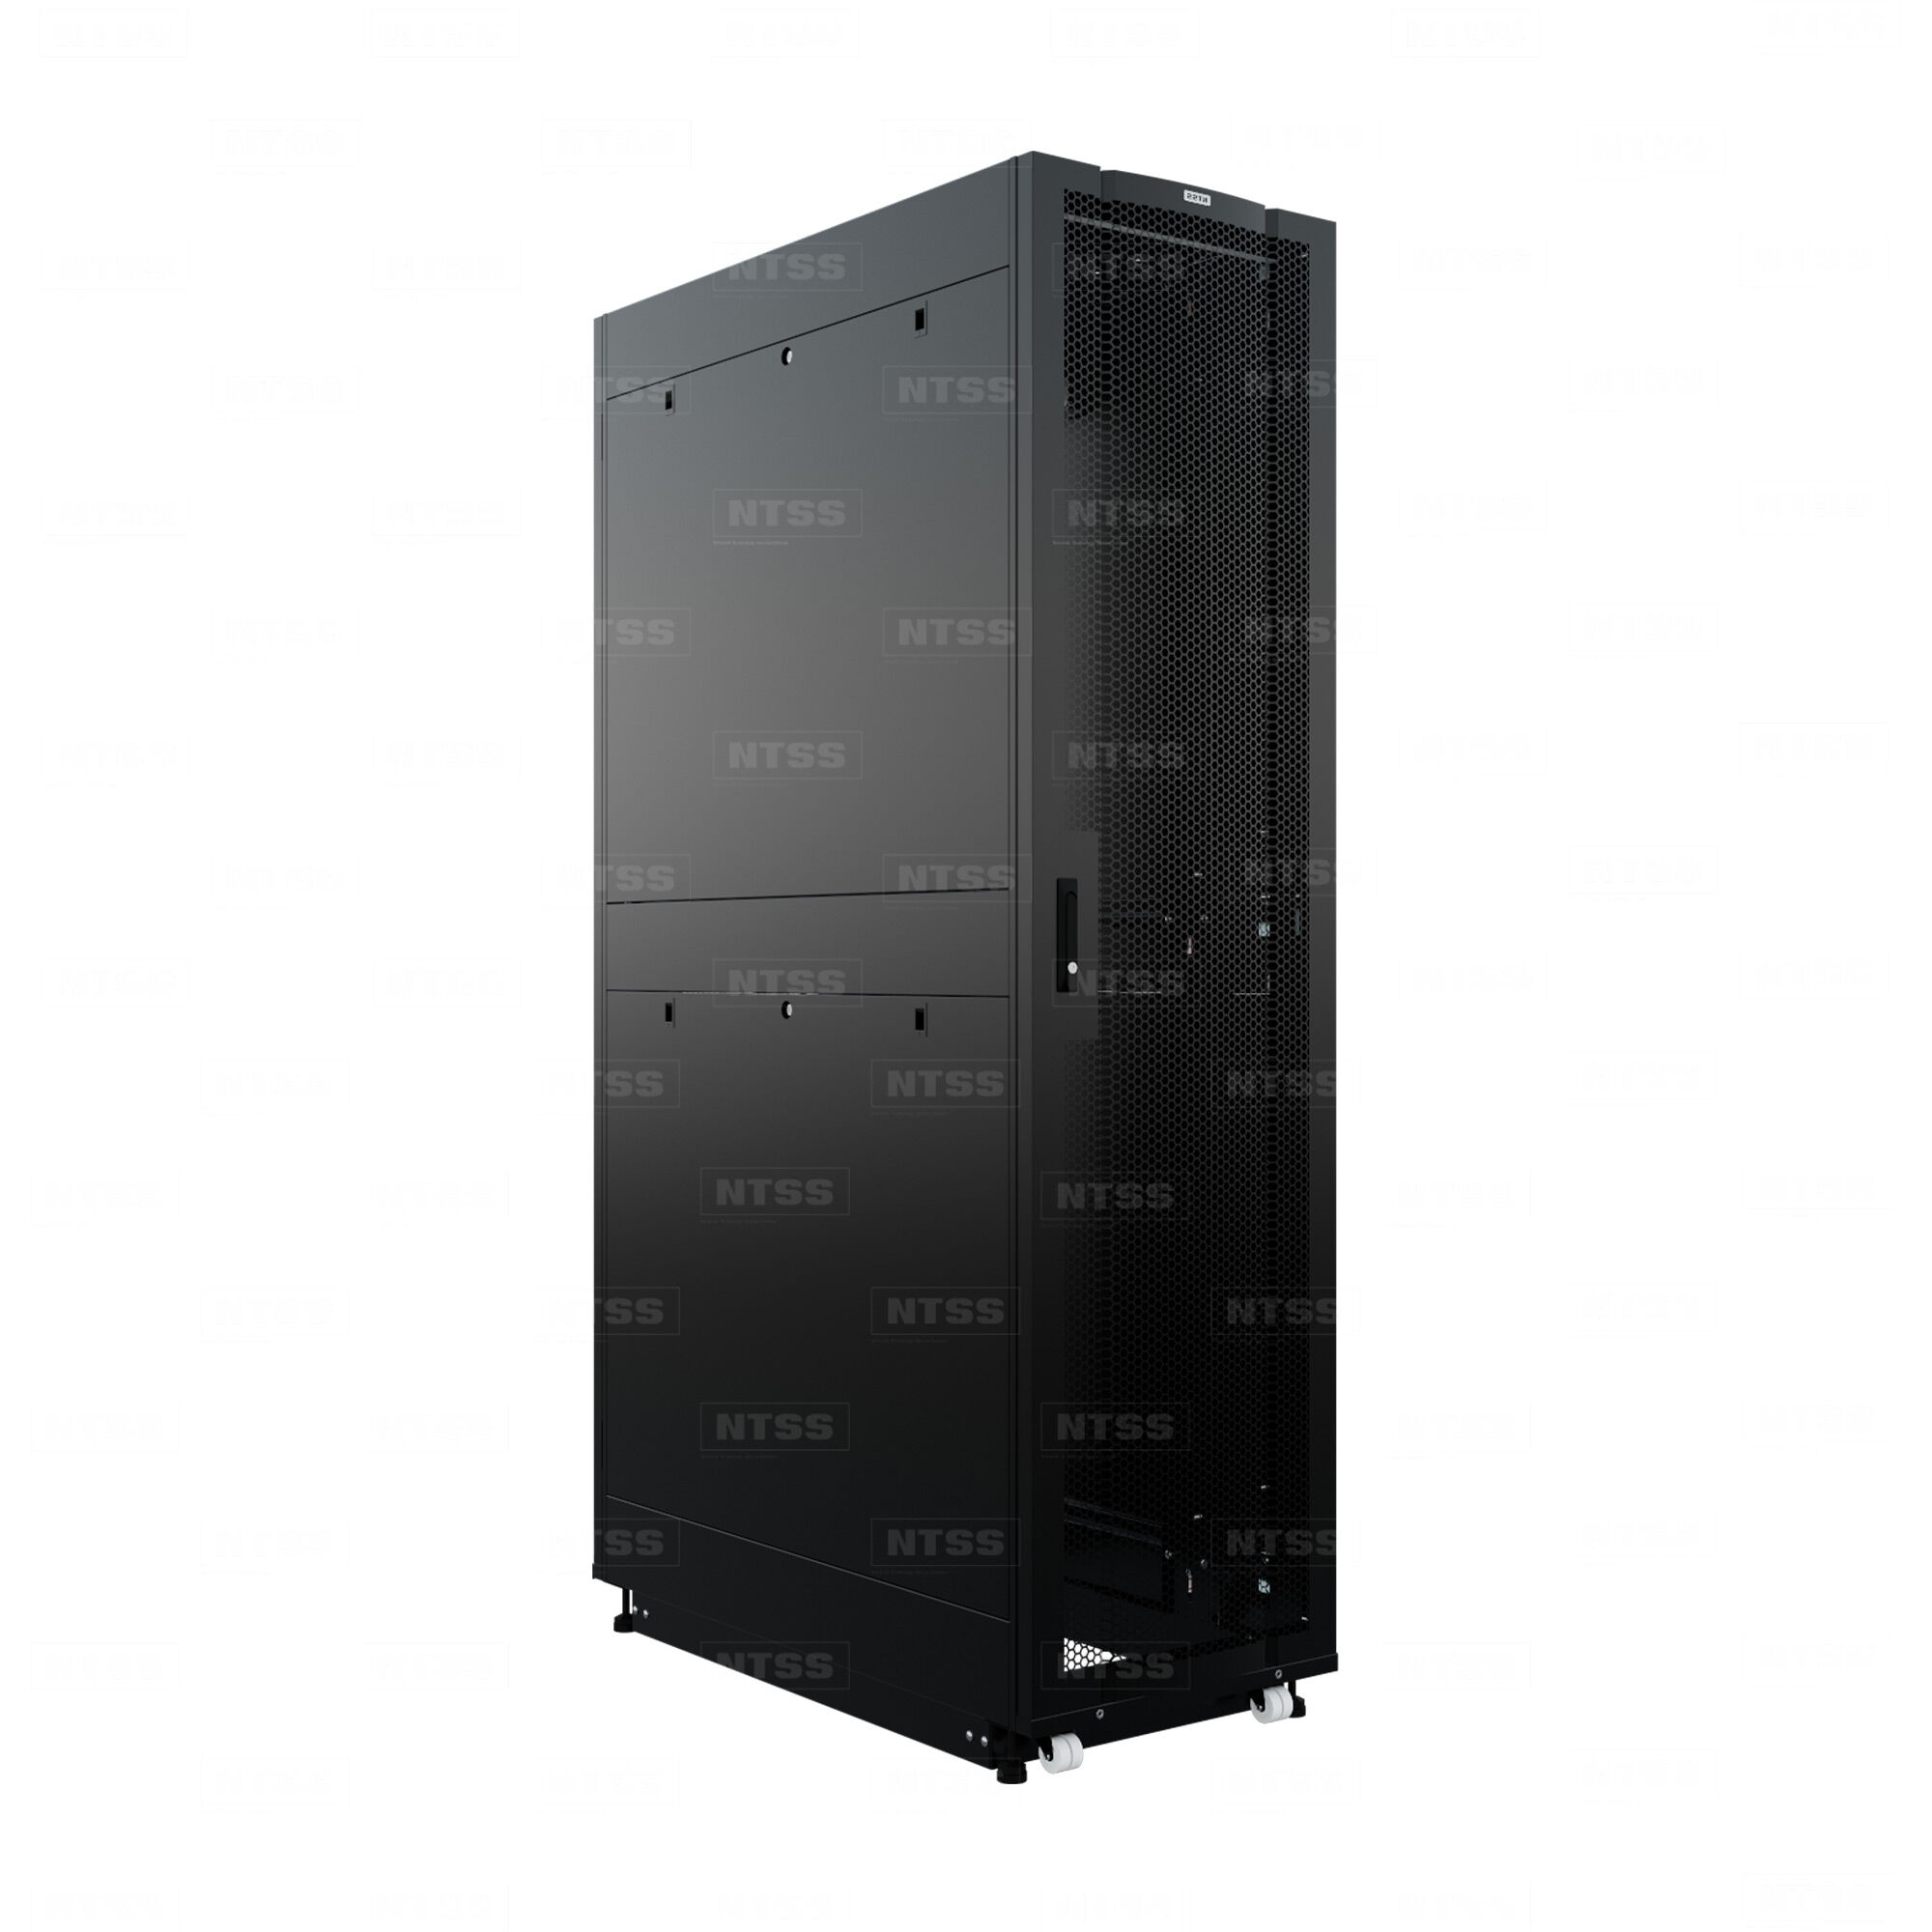 19" Напольный серверный шкаф NTSS ПРОЦОД PC 45U 600х1200 мм, передняя дверь перфорация, задняя дверь распашная двойная п